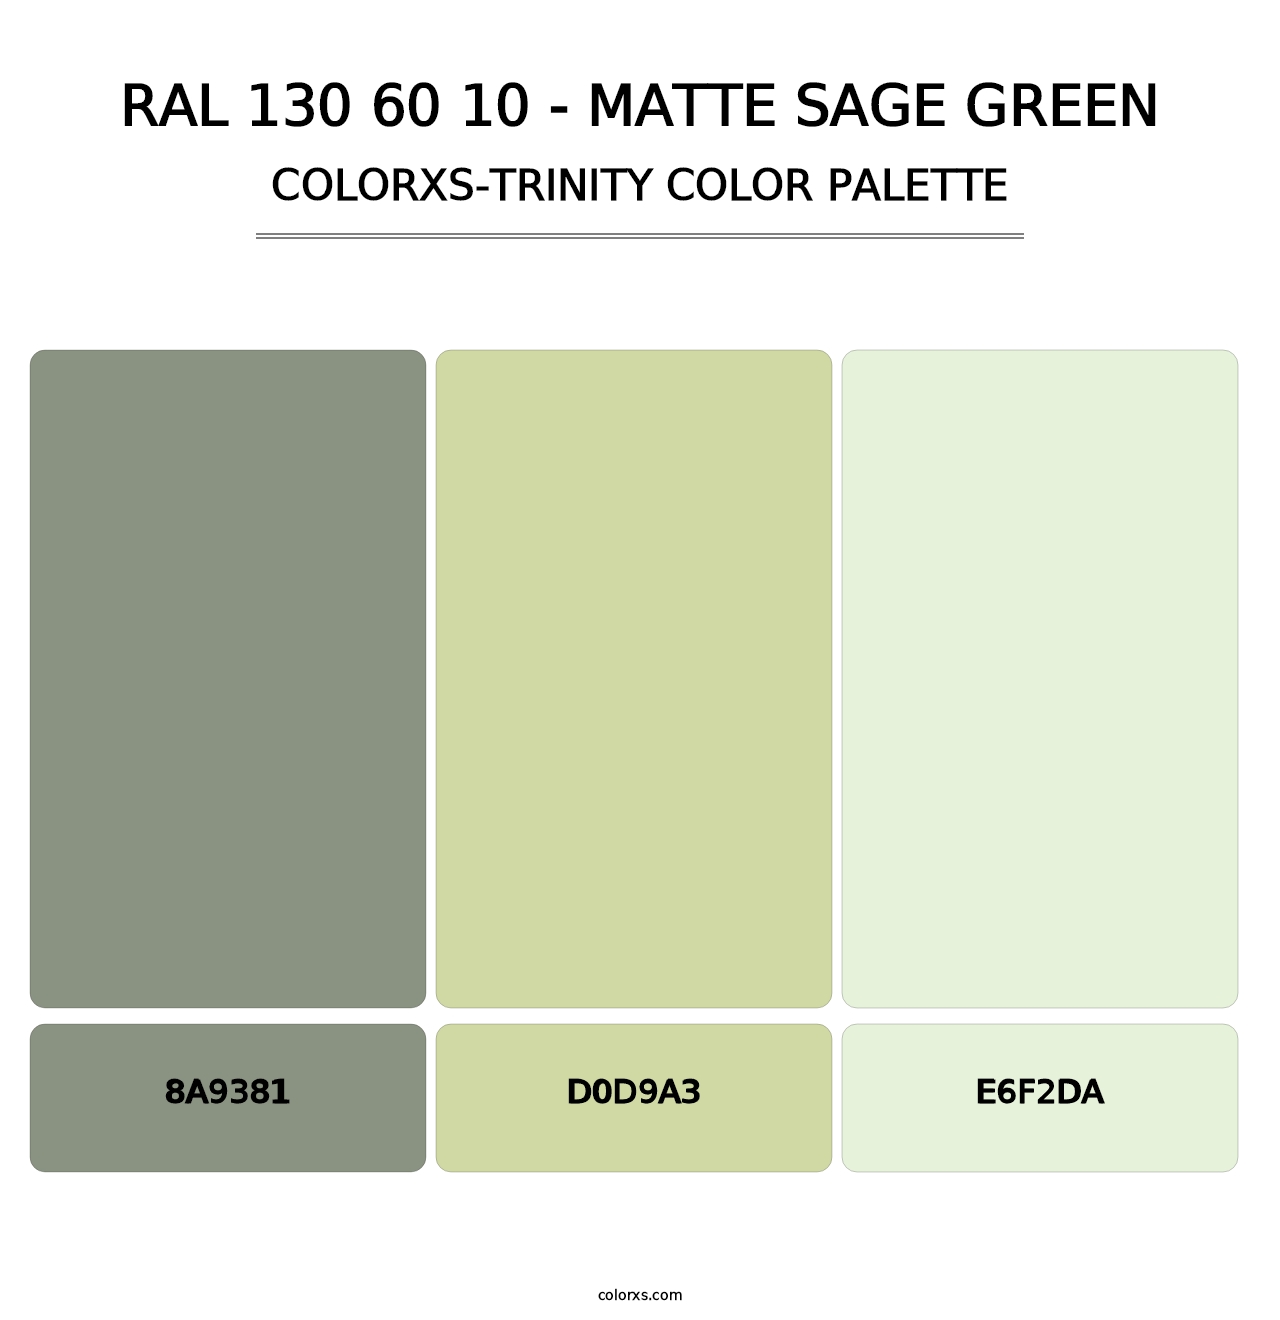 RAL 130 60 10 - Matte Sage Green - Colorxs Trinity Palette